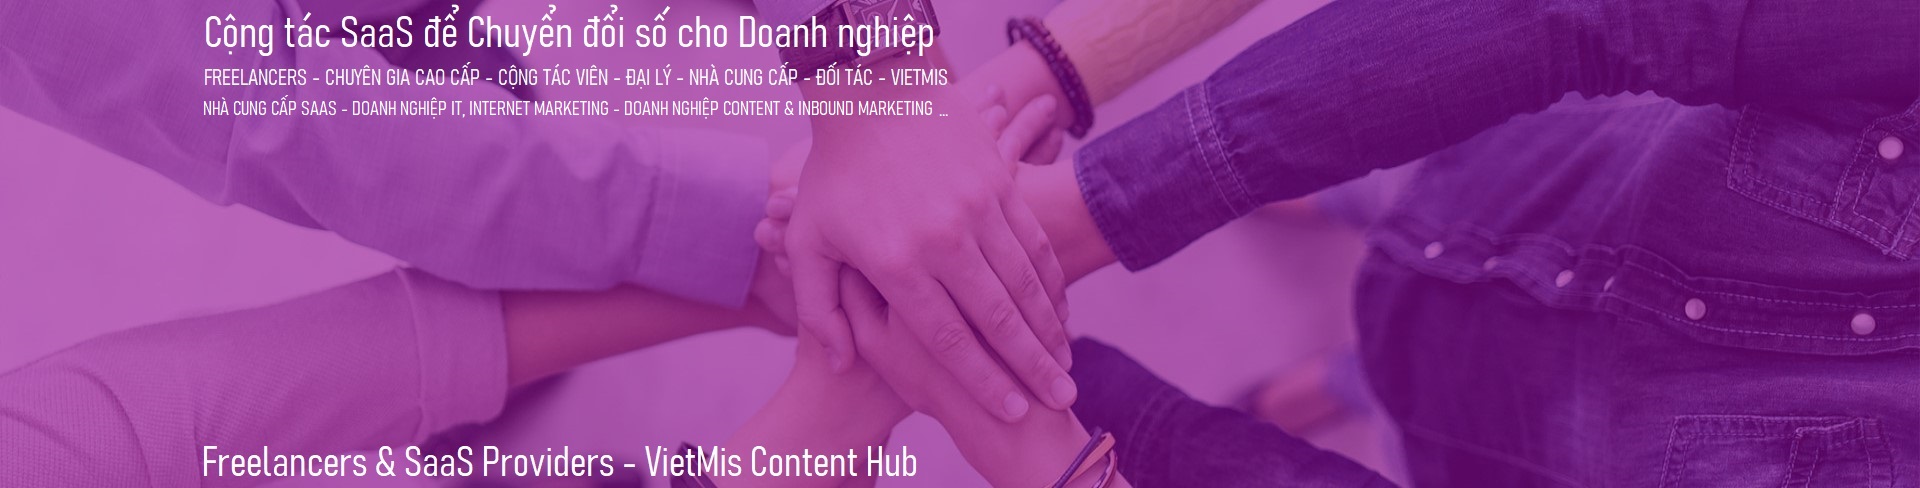 Freelancers & SaaS Providers - VietMis Content Hub